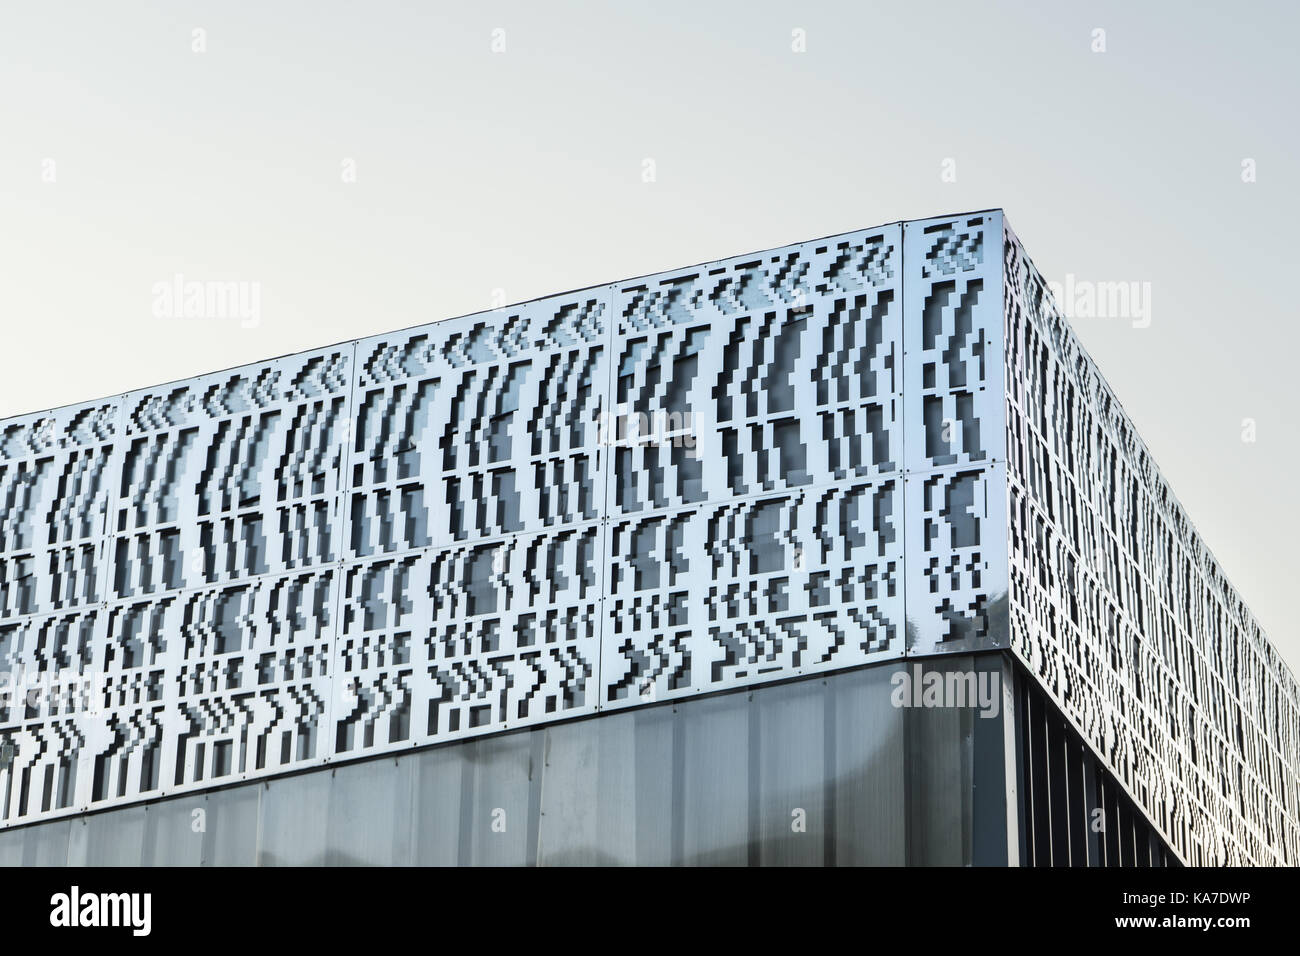 Une partie de l'édifice de style scandinave horizontales sur un fond gris Banque D'Images